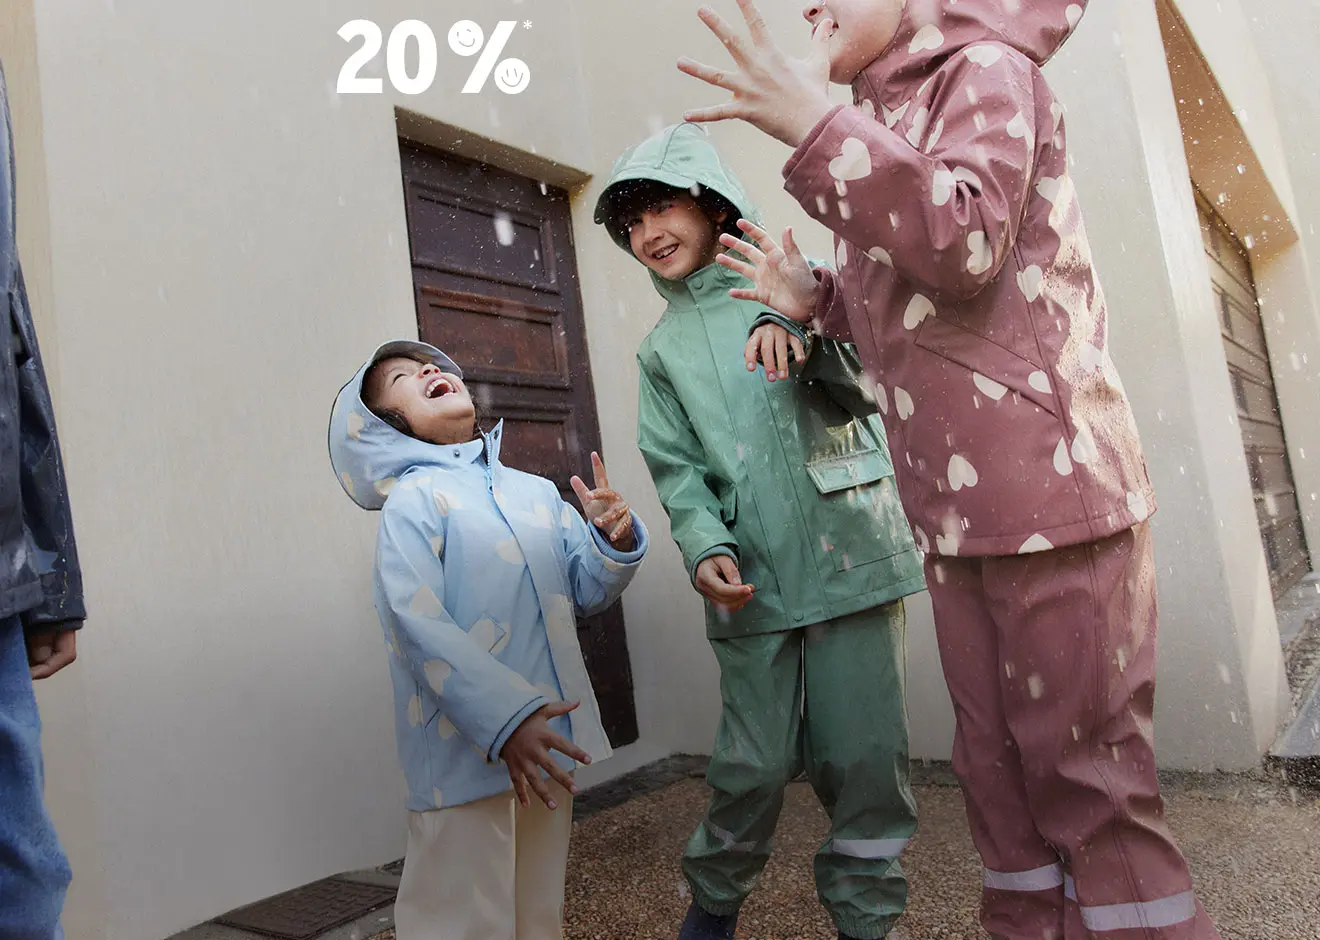 Regenmode für Kinder 20% günstiger